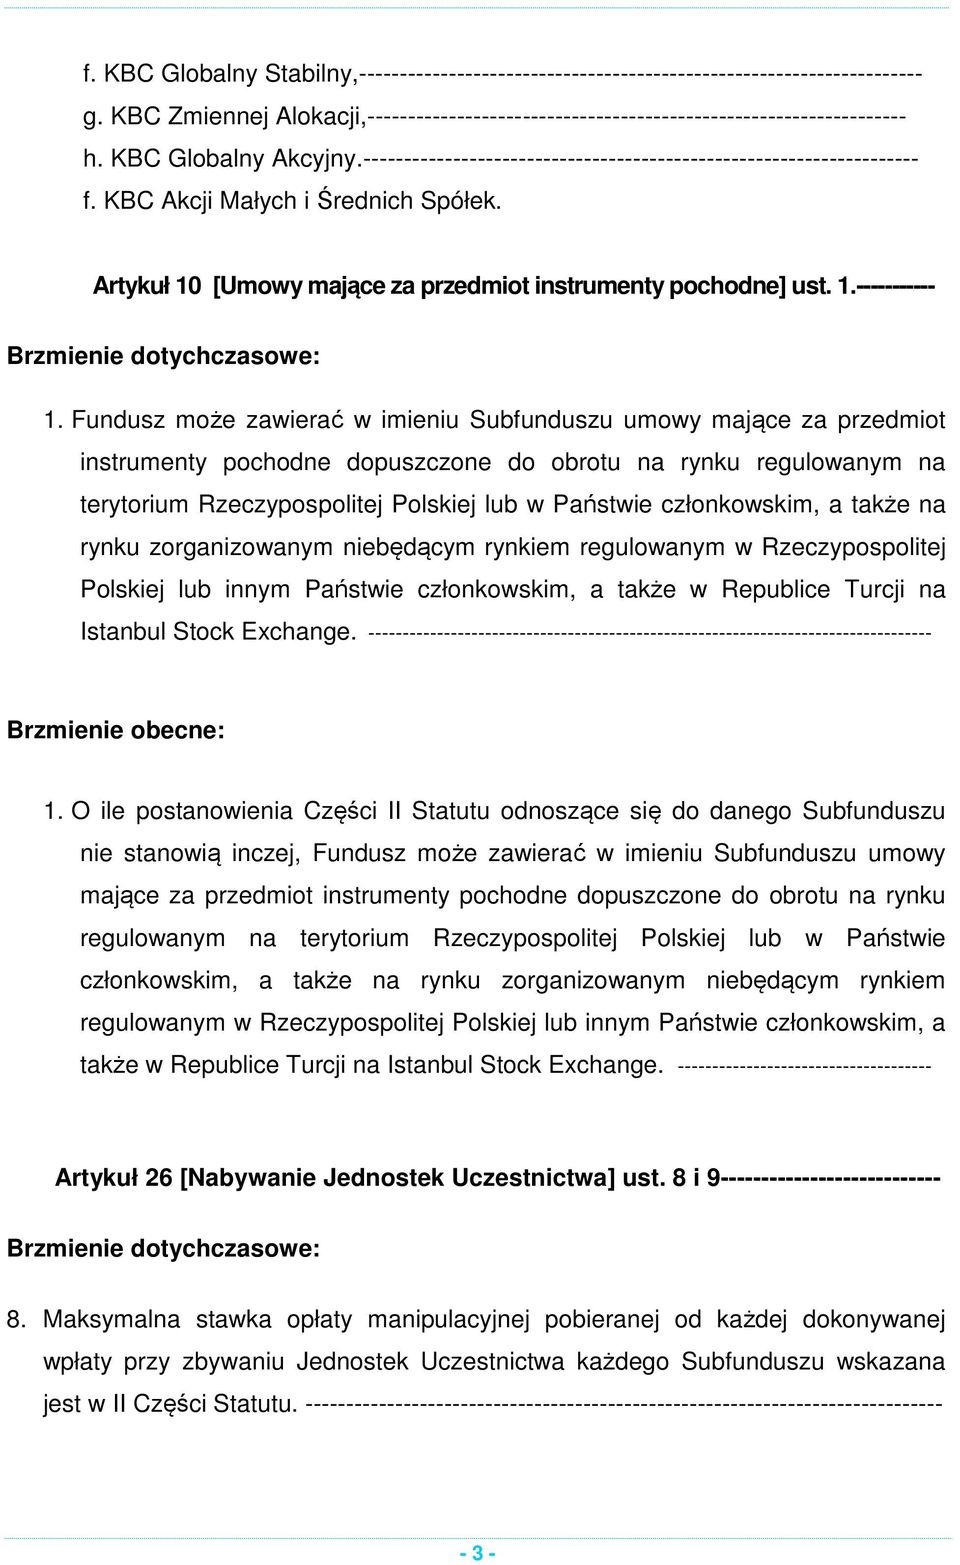 Fundusz może zawierać w imieniu Subfunduszu umowy mające za przedmiot instrumenty pochodne dopuszczone do obrotu na rynku regulowanym na terytorium Rzeczypospolitej Polskiej lub w Państwie